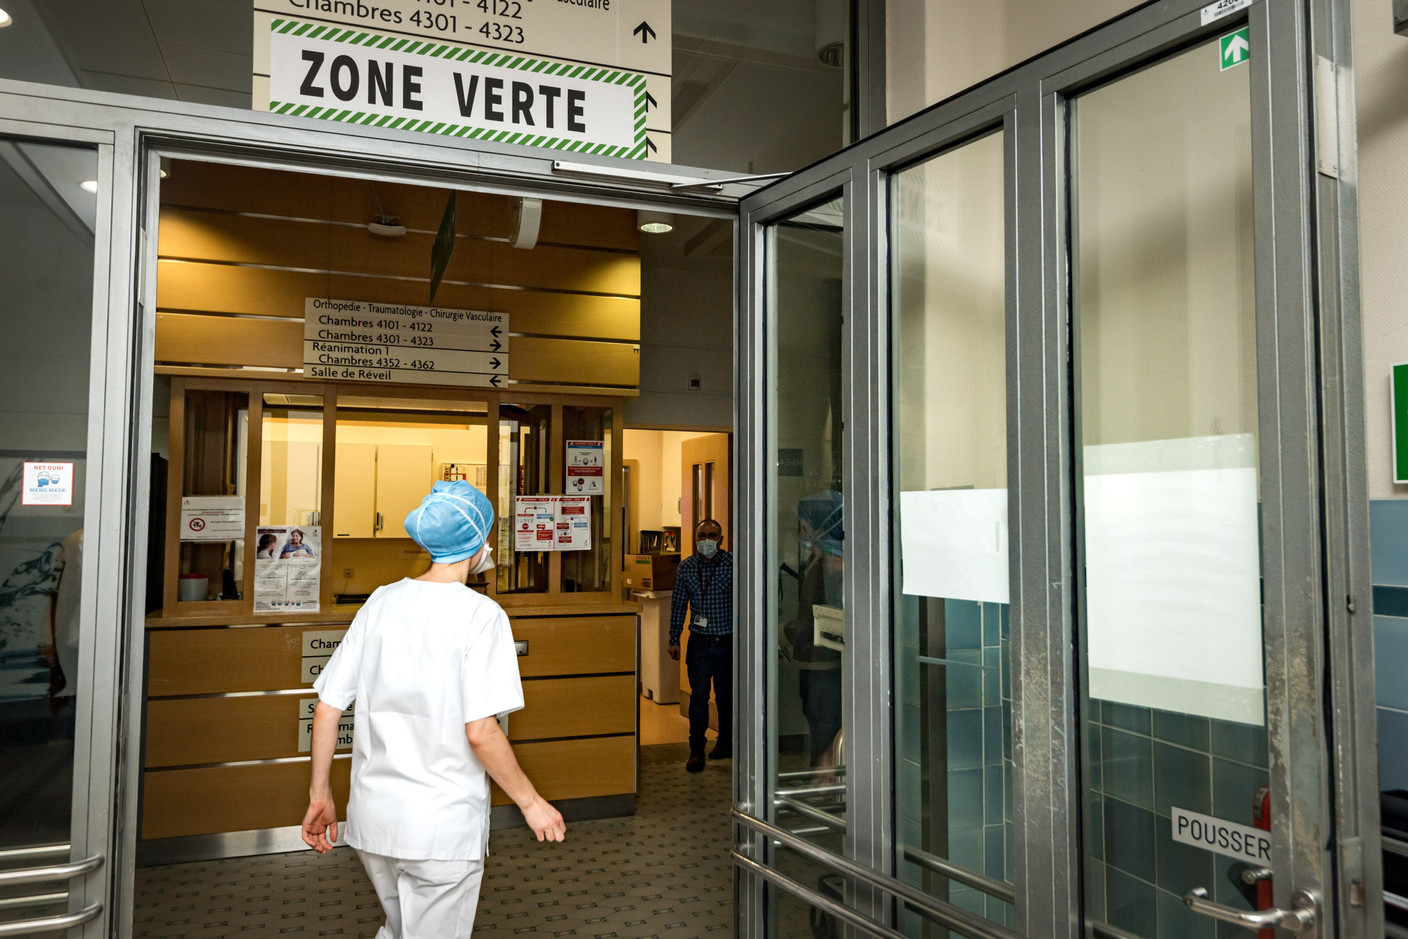 La plupart du service orthopédie est repassé en zone verte, ce qui signifie qu’il n’accueille plus de patients Covid. (Photo: Nader Ghavami / Maison Moderne)